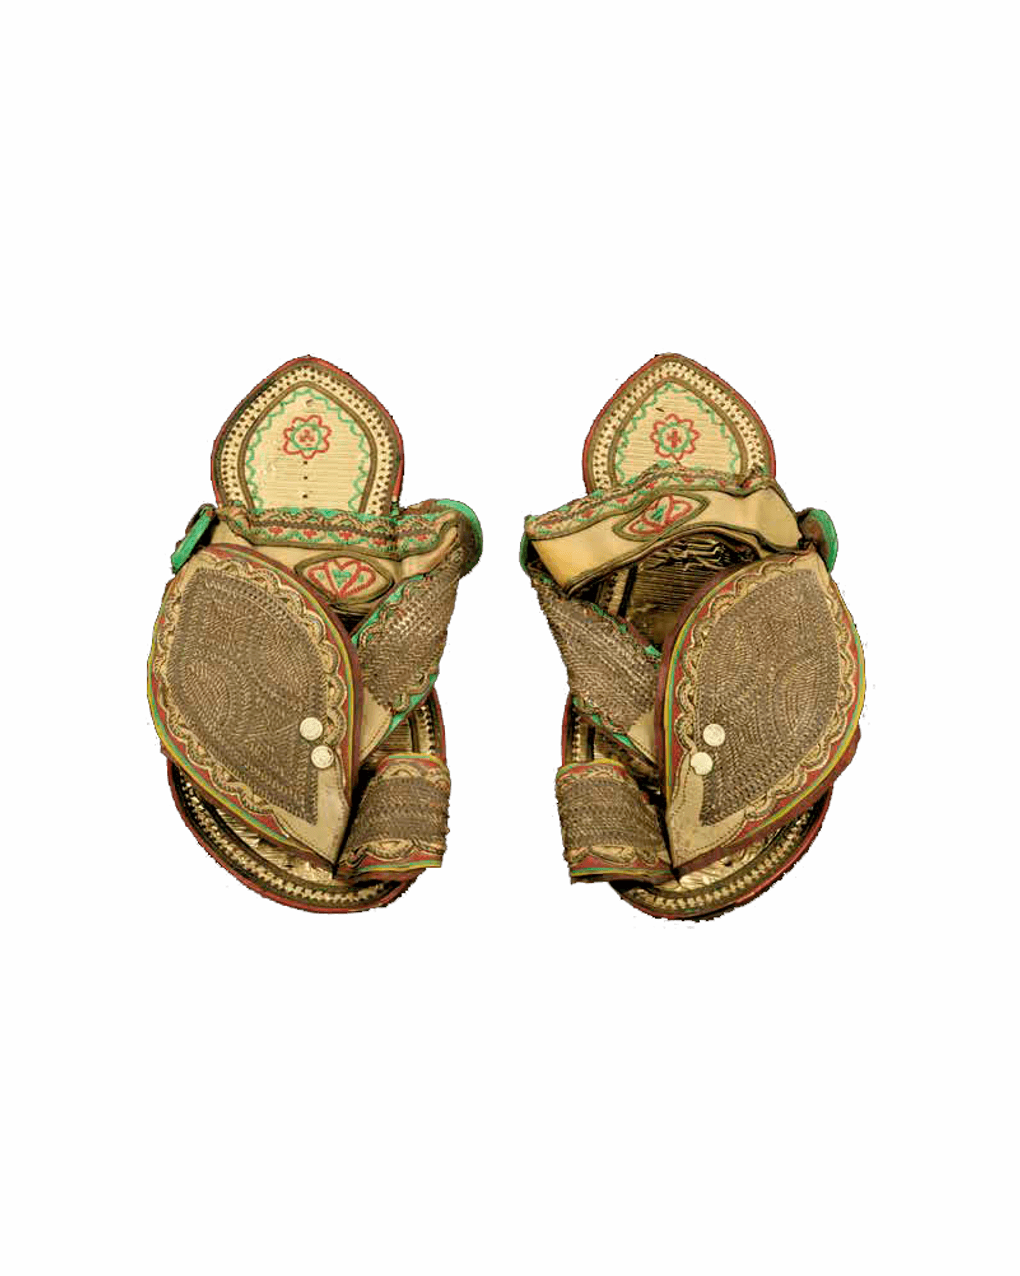 Мужские сандалии. XX век. Фотография предоставлена Национальным музеем Катара, Катар